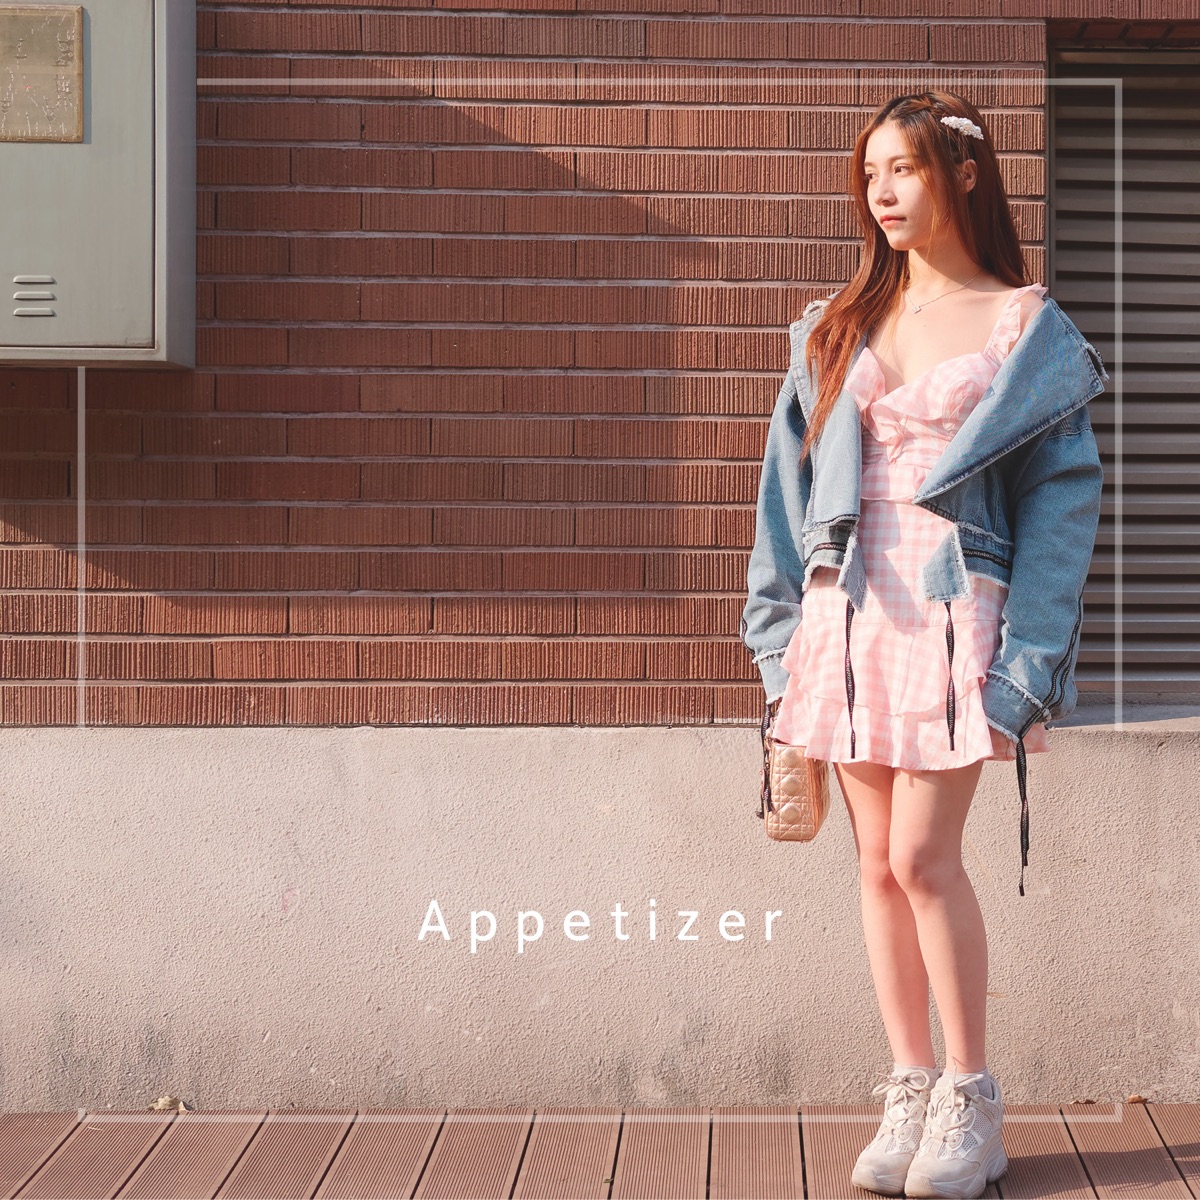 Appetizer – Not Meet You (feat. Ryhee) – Single